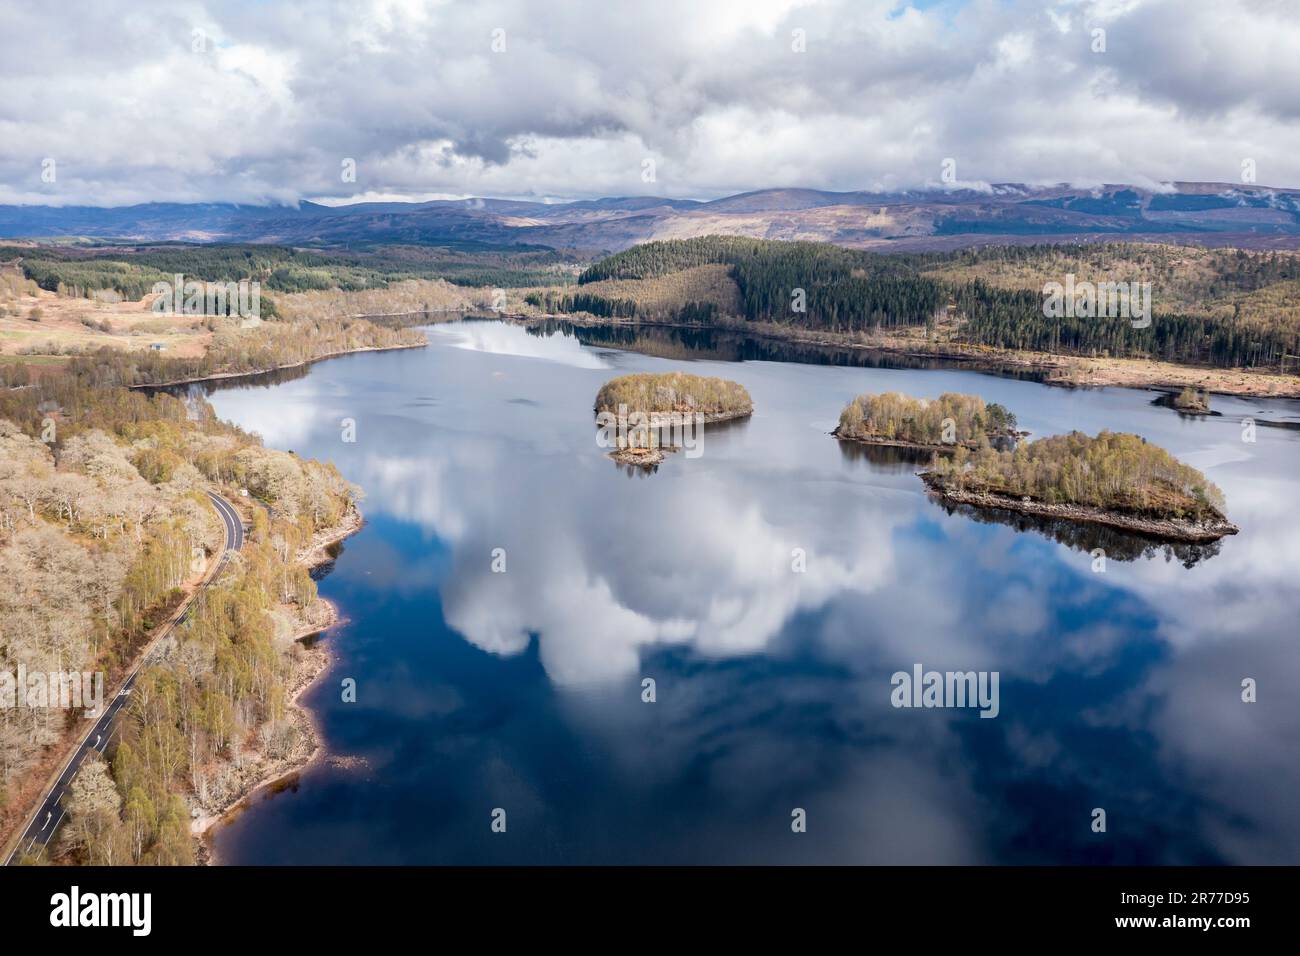 Nuages reflétés dans le lac Loch Garry, îles sur le ciel miroir, Highlands écossais, vue aérienne, Écosse, Royaume-Uni Banque D'Images